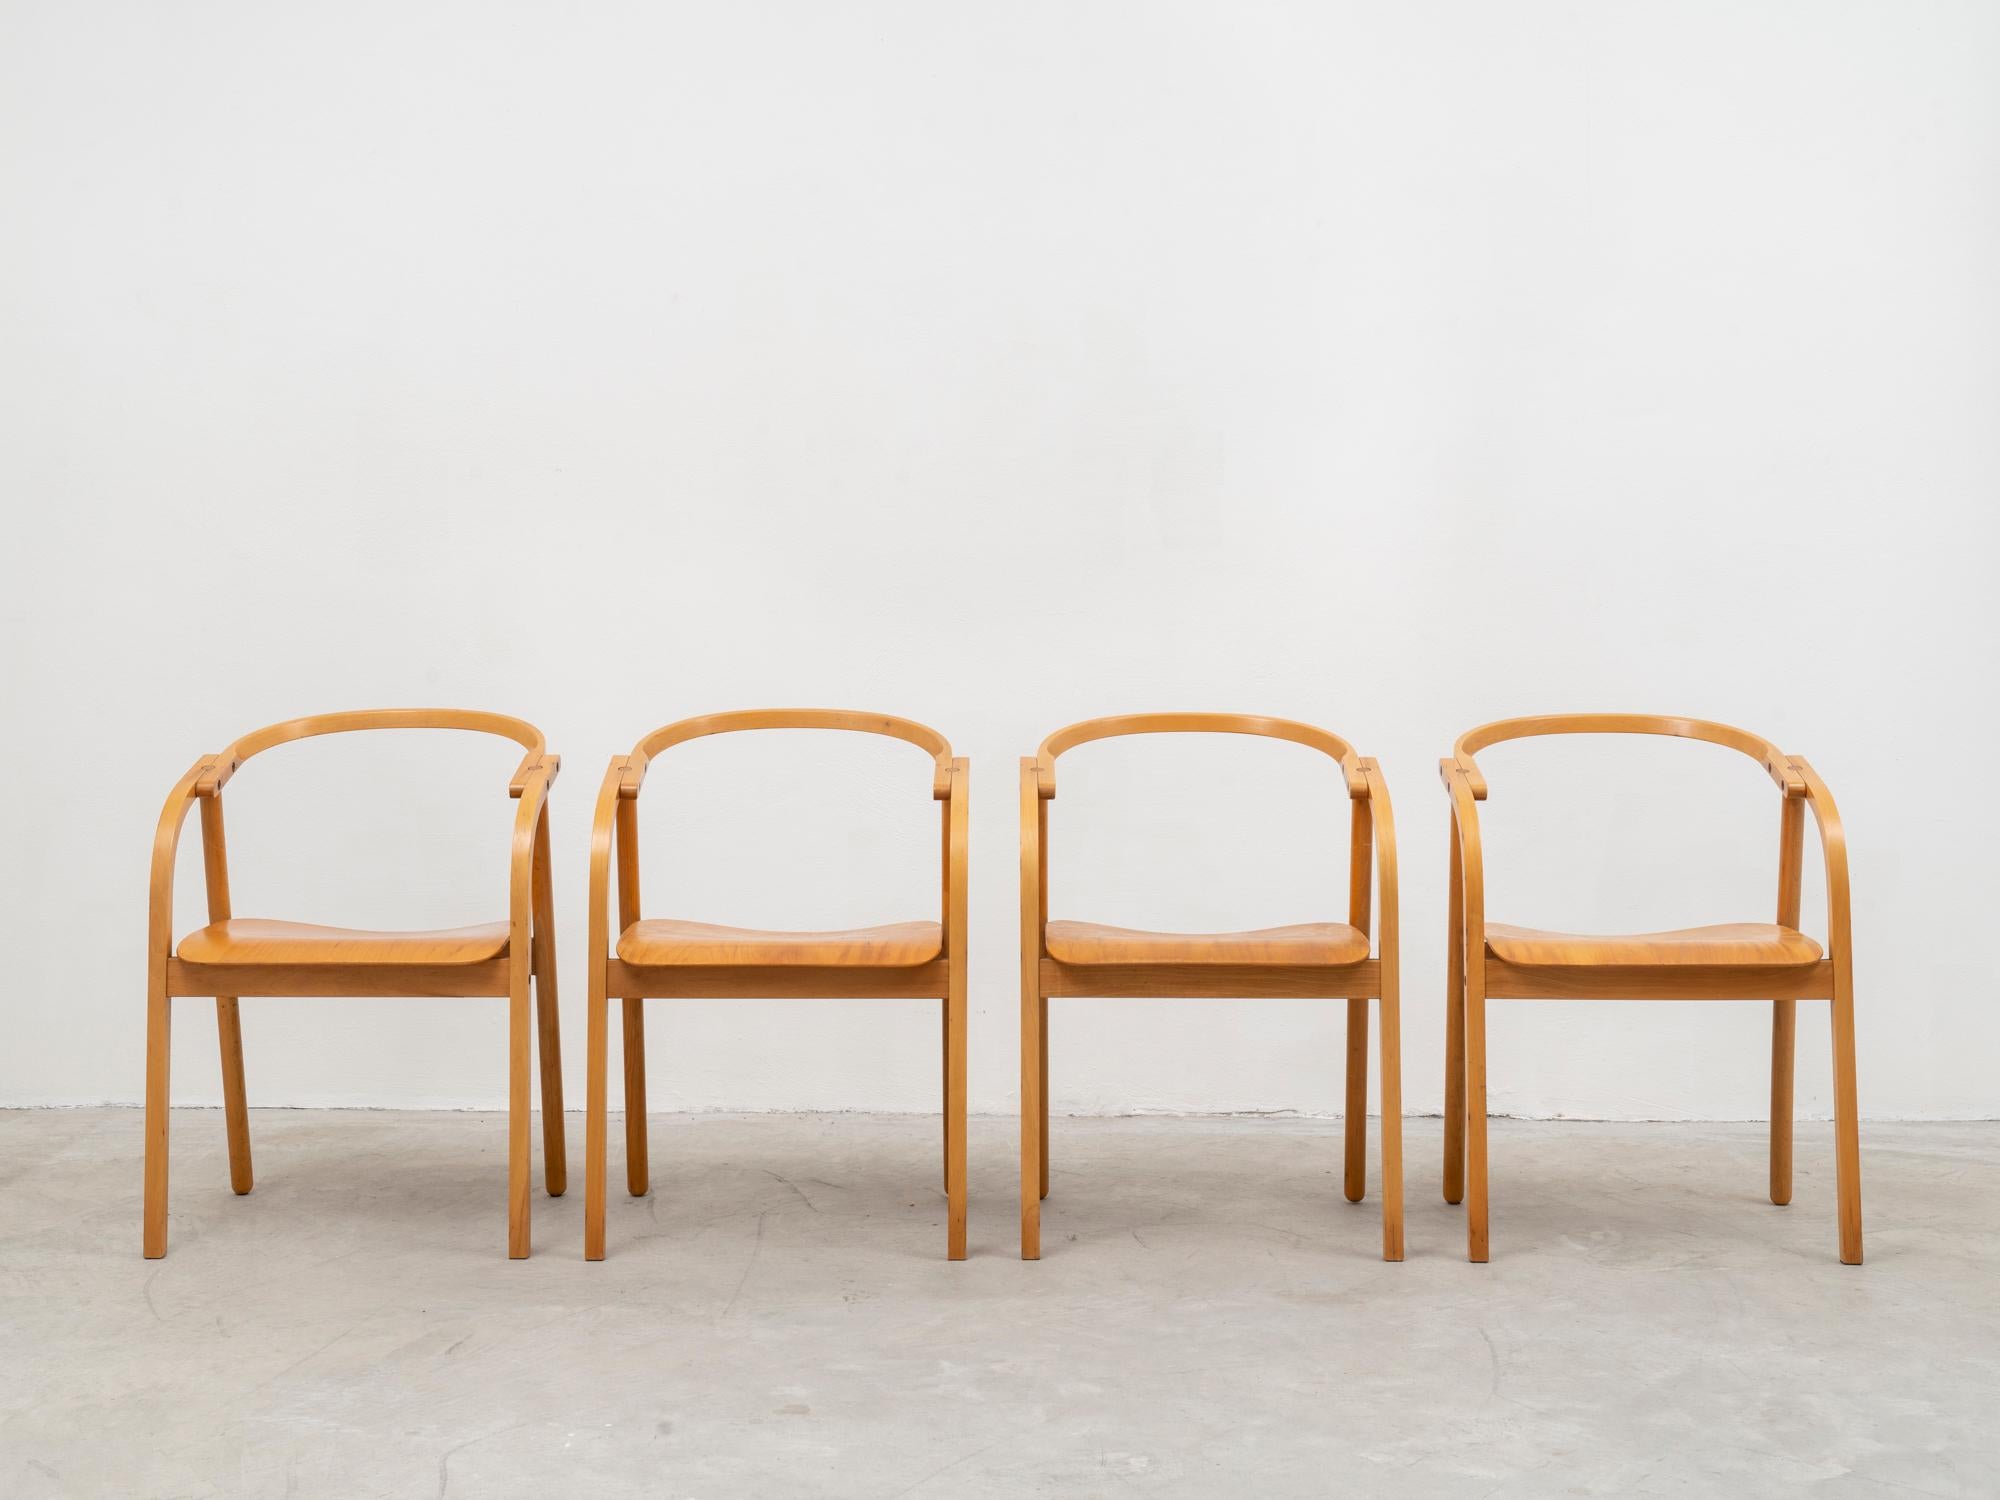 Très rare ensemble de chaises des designers Werther Toffoloni et Piero Palange, fabriqué par Ibis. Ce modèle a été sélectionné pour le concours Compasso d'Oro en 1981. Ils sont fabriqués en hêtre massif courbé et étuvé, à l'exception de l'assise qui